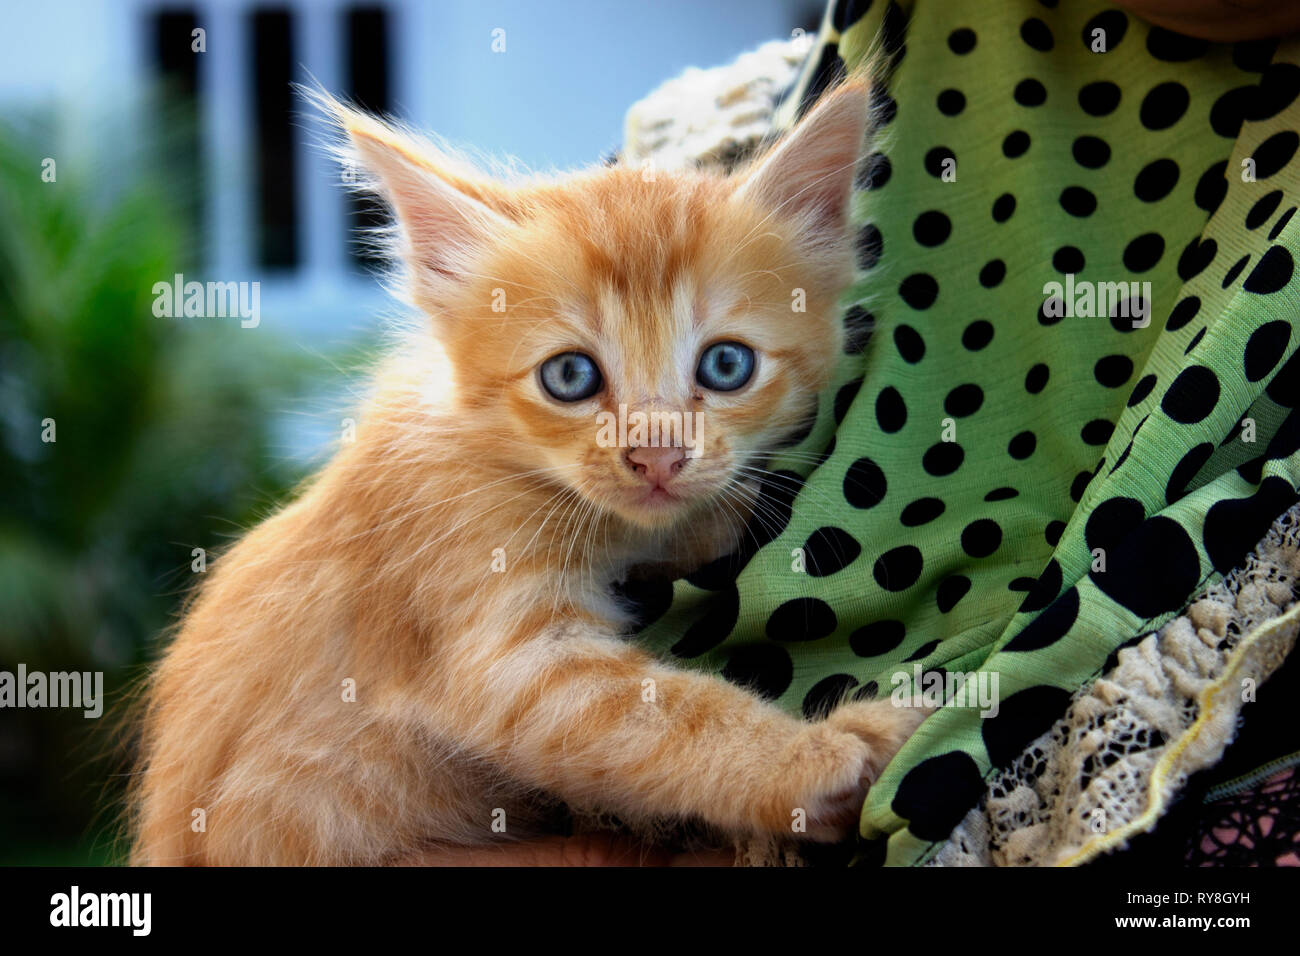 Cute Orange Kitten Held By A Woman It Has Blue Eyes Stock Photo Alamy